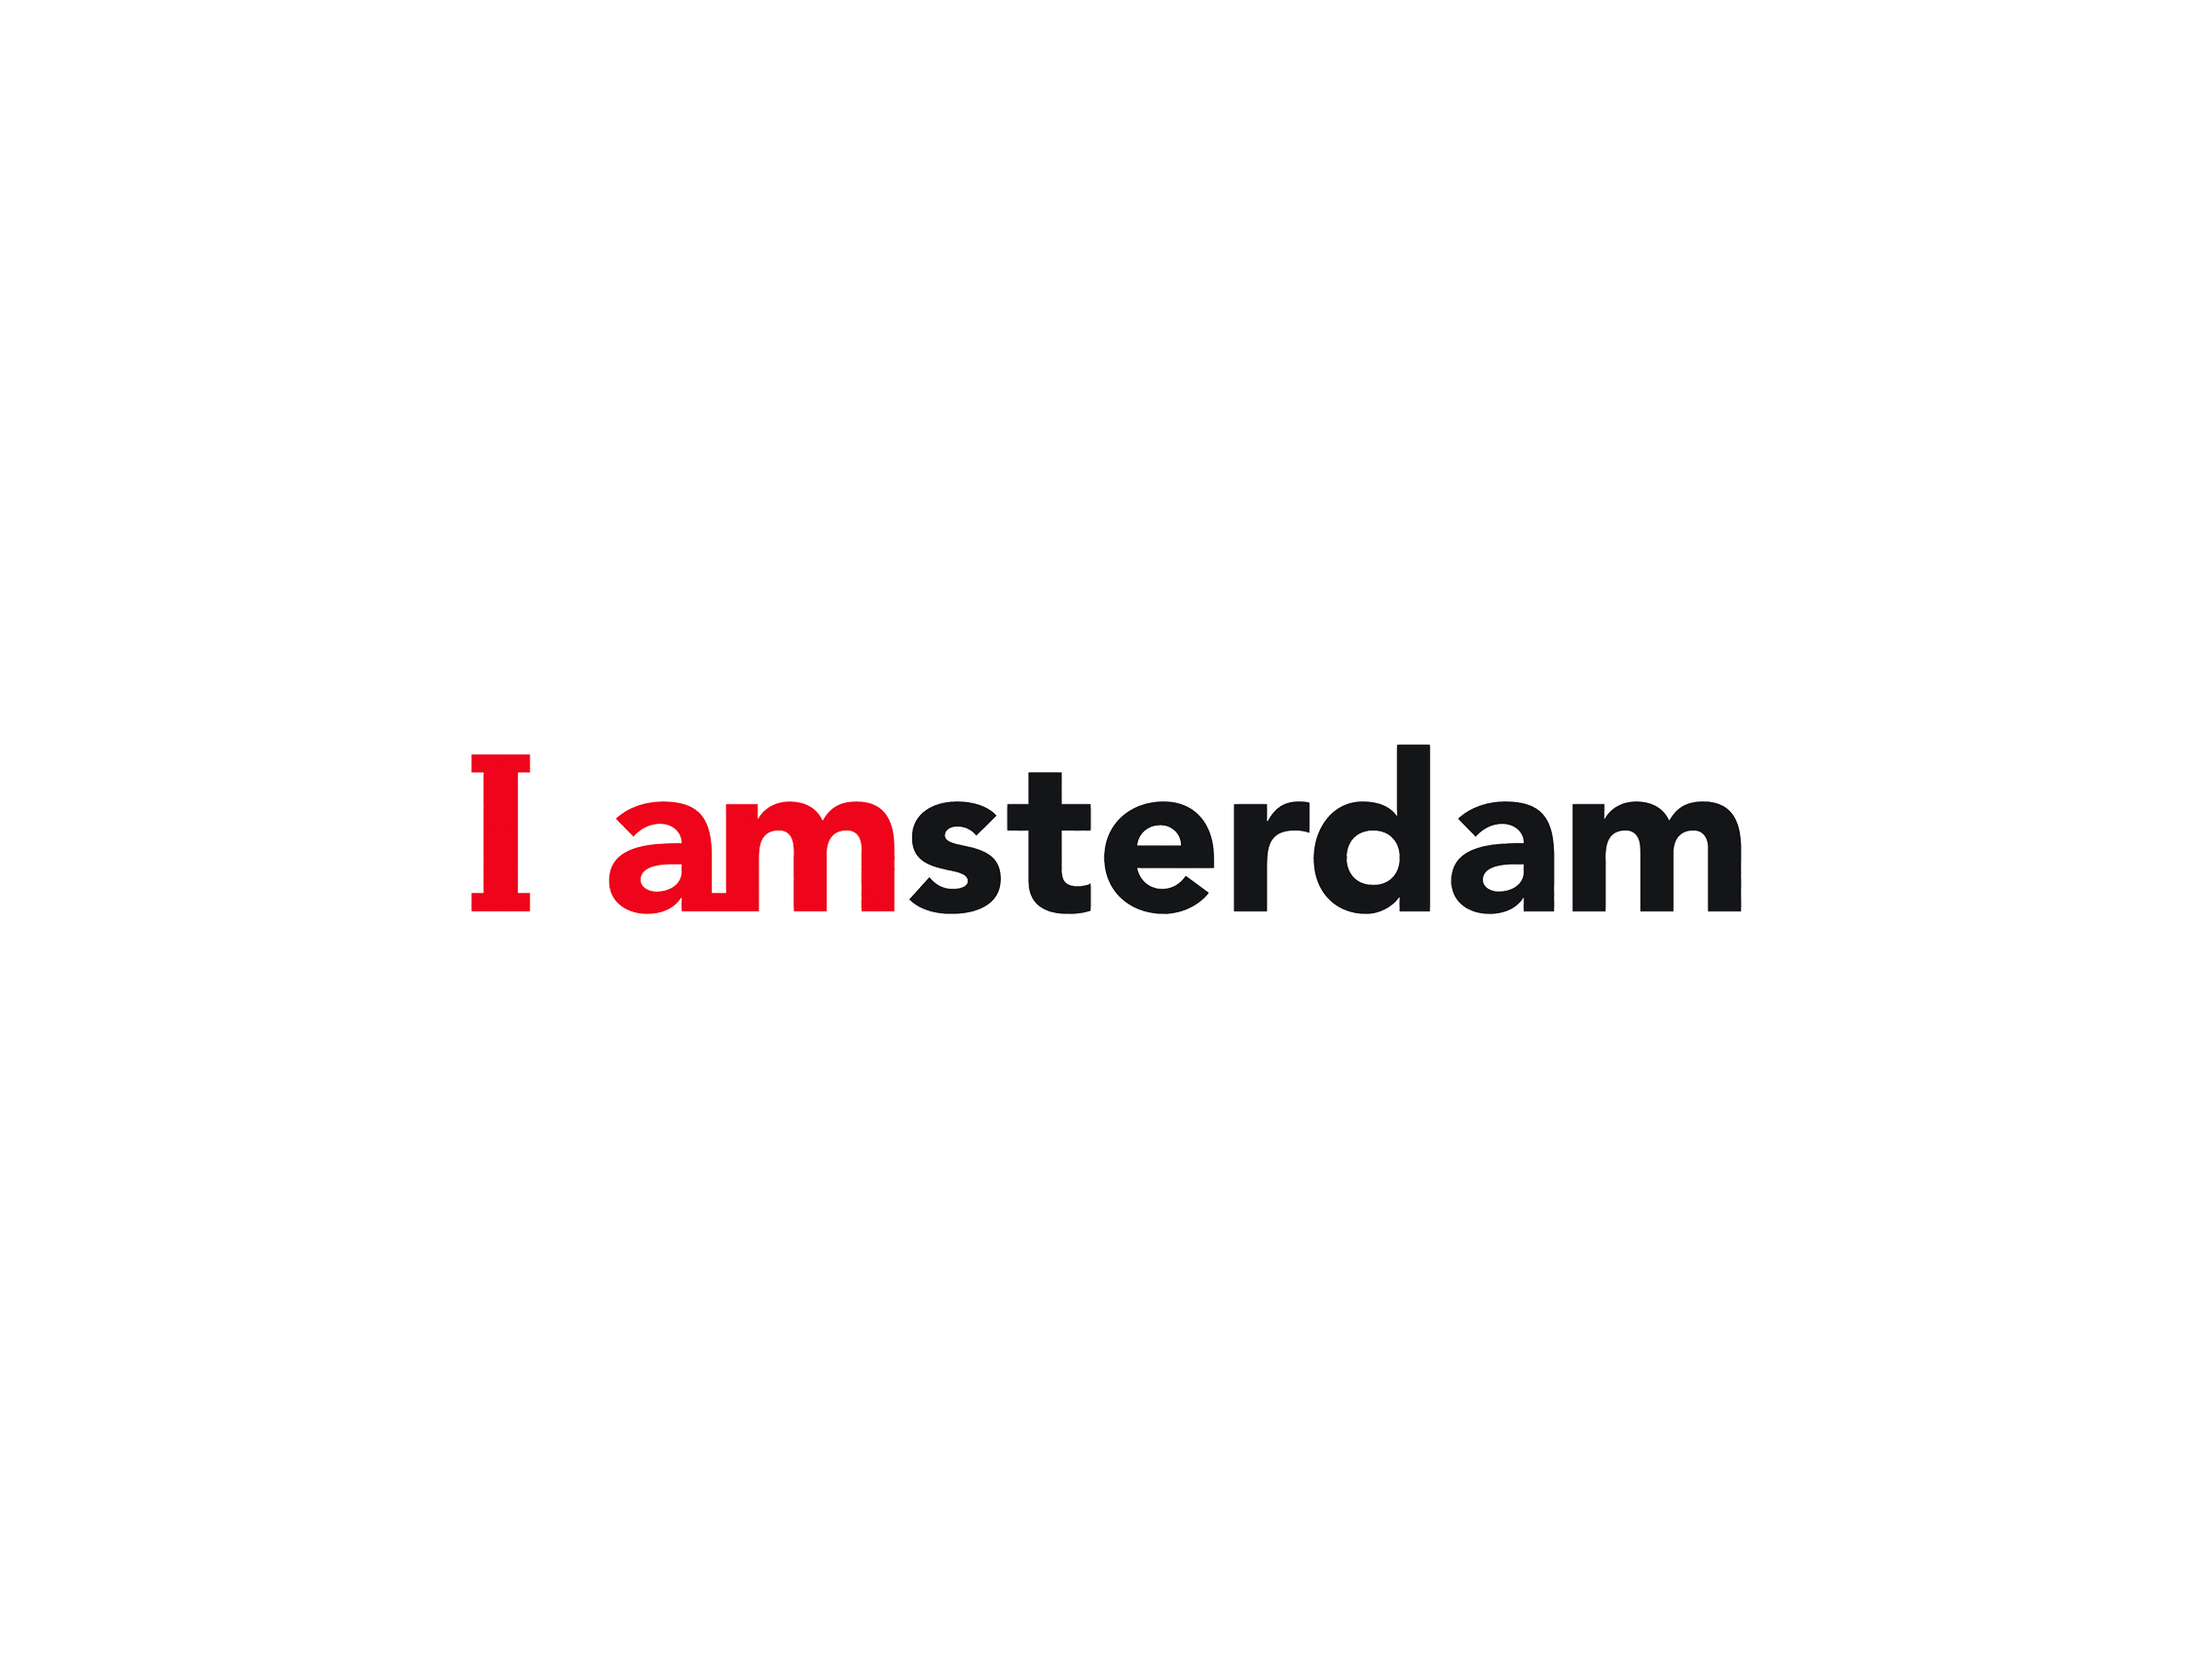 Amsterdam Logo - I amsterdam logo